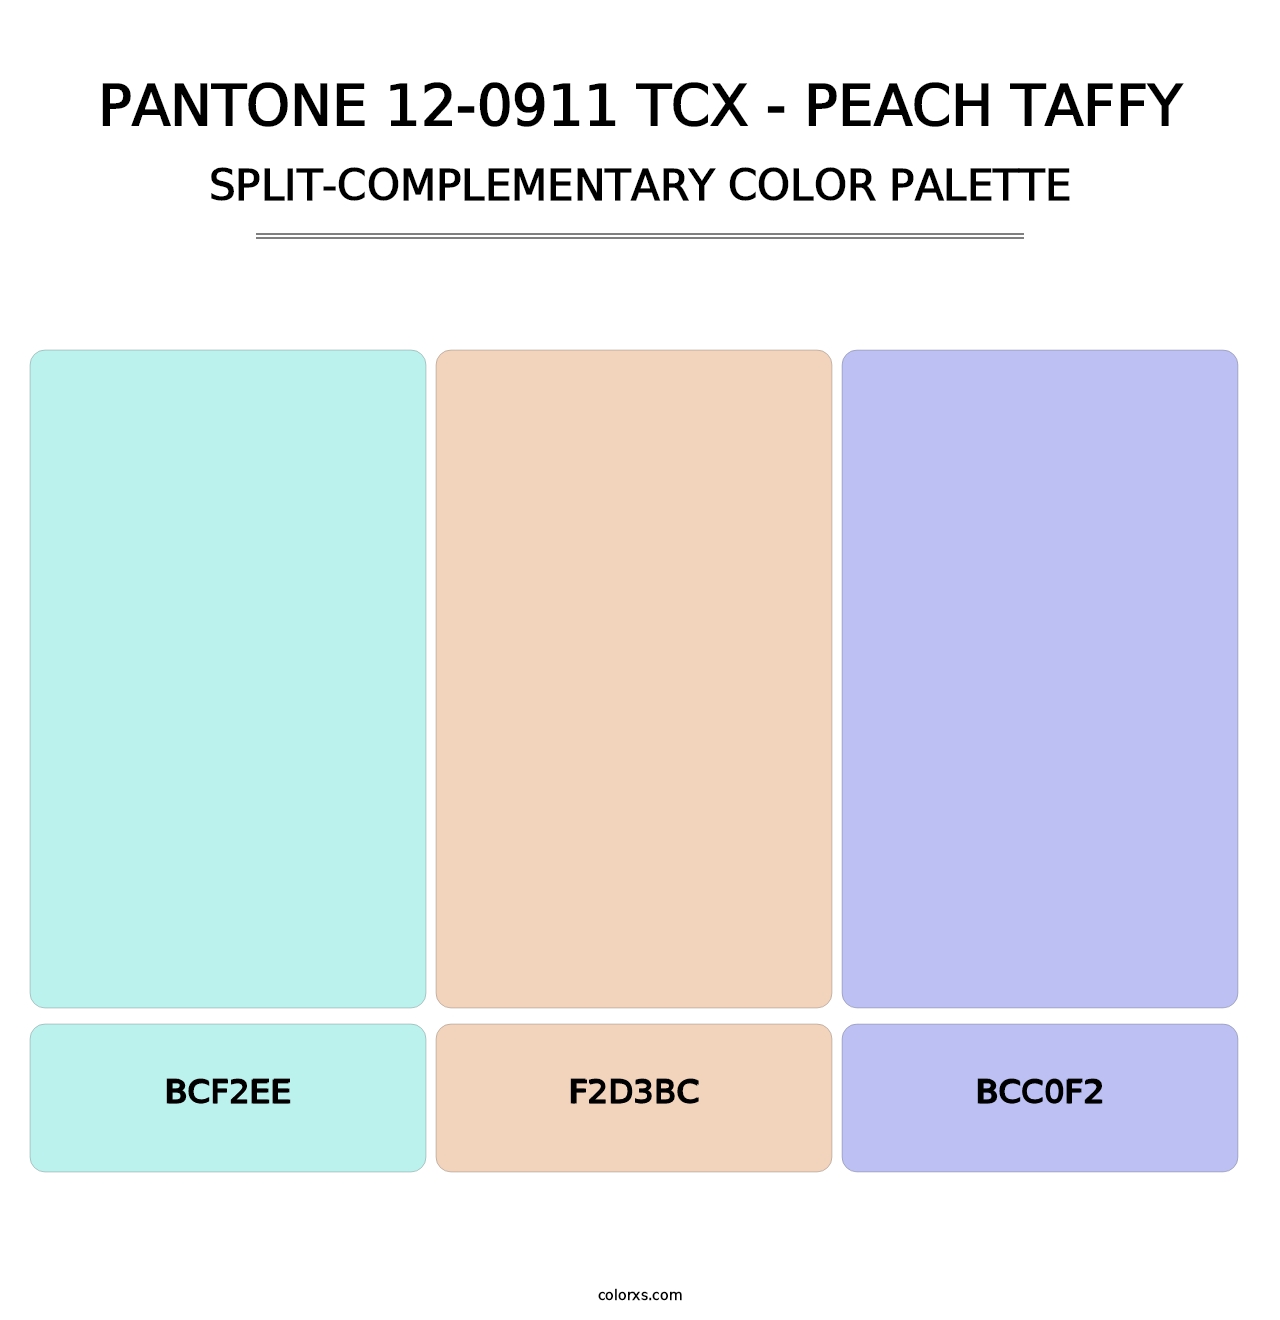 PANTONE 12-0911 TCX - Peach Taffy - Split-Complementary Color Palette